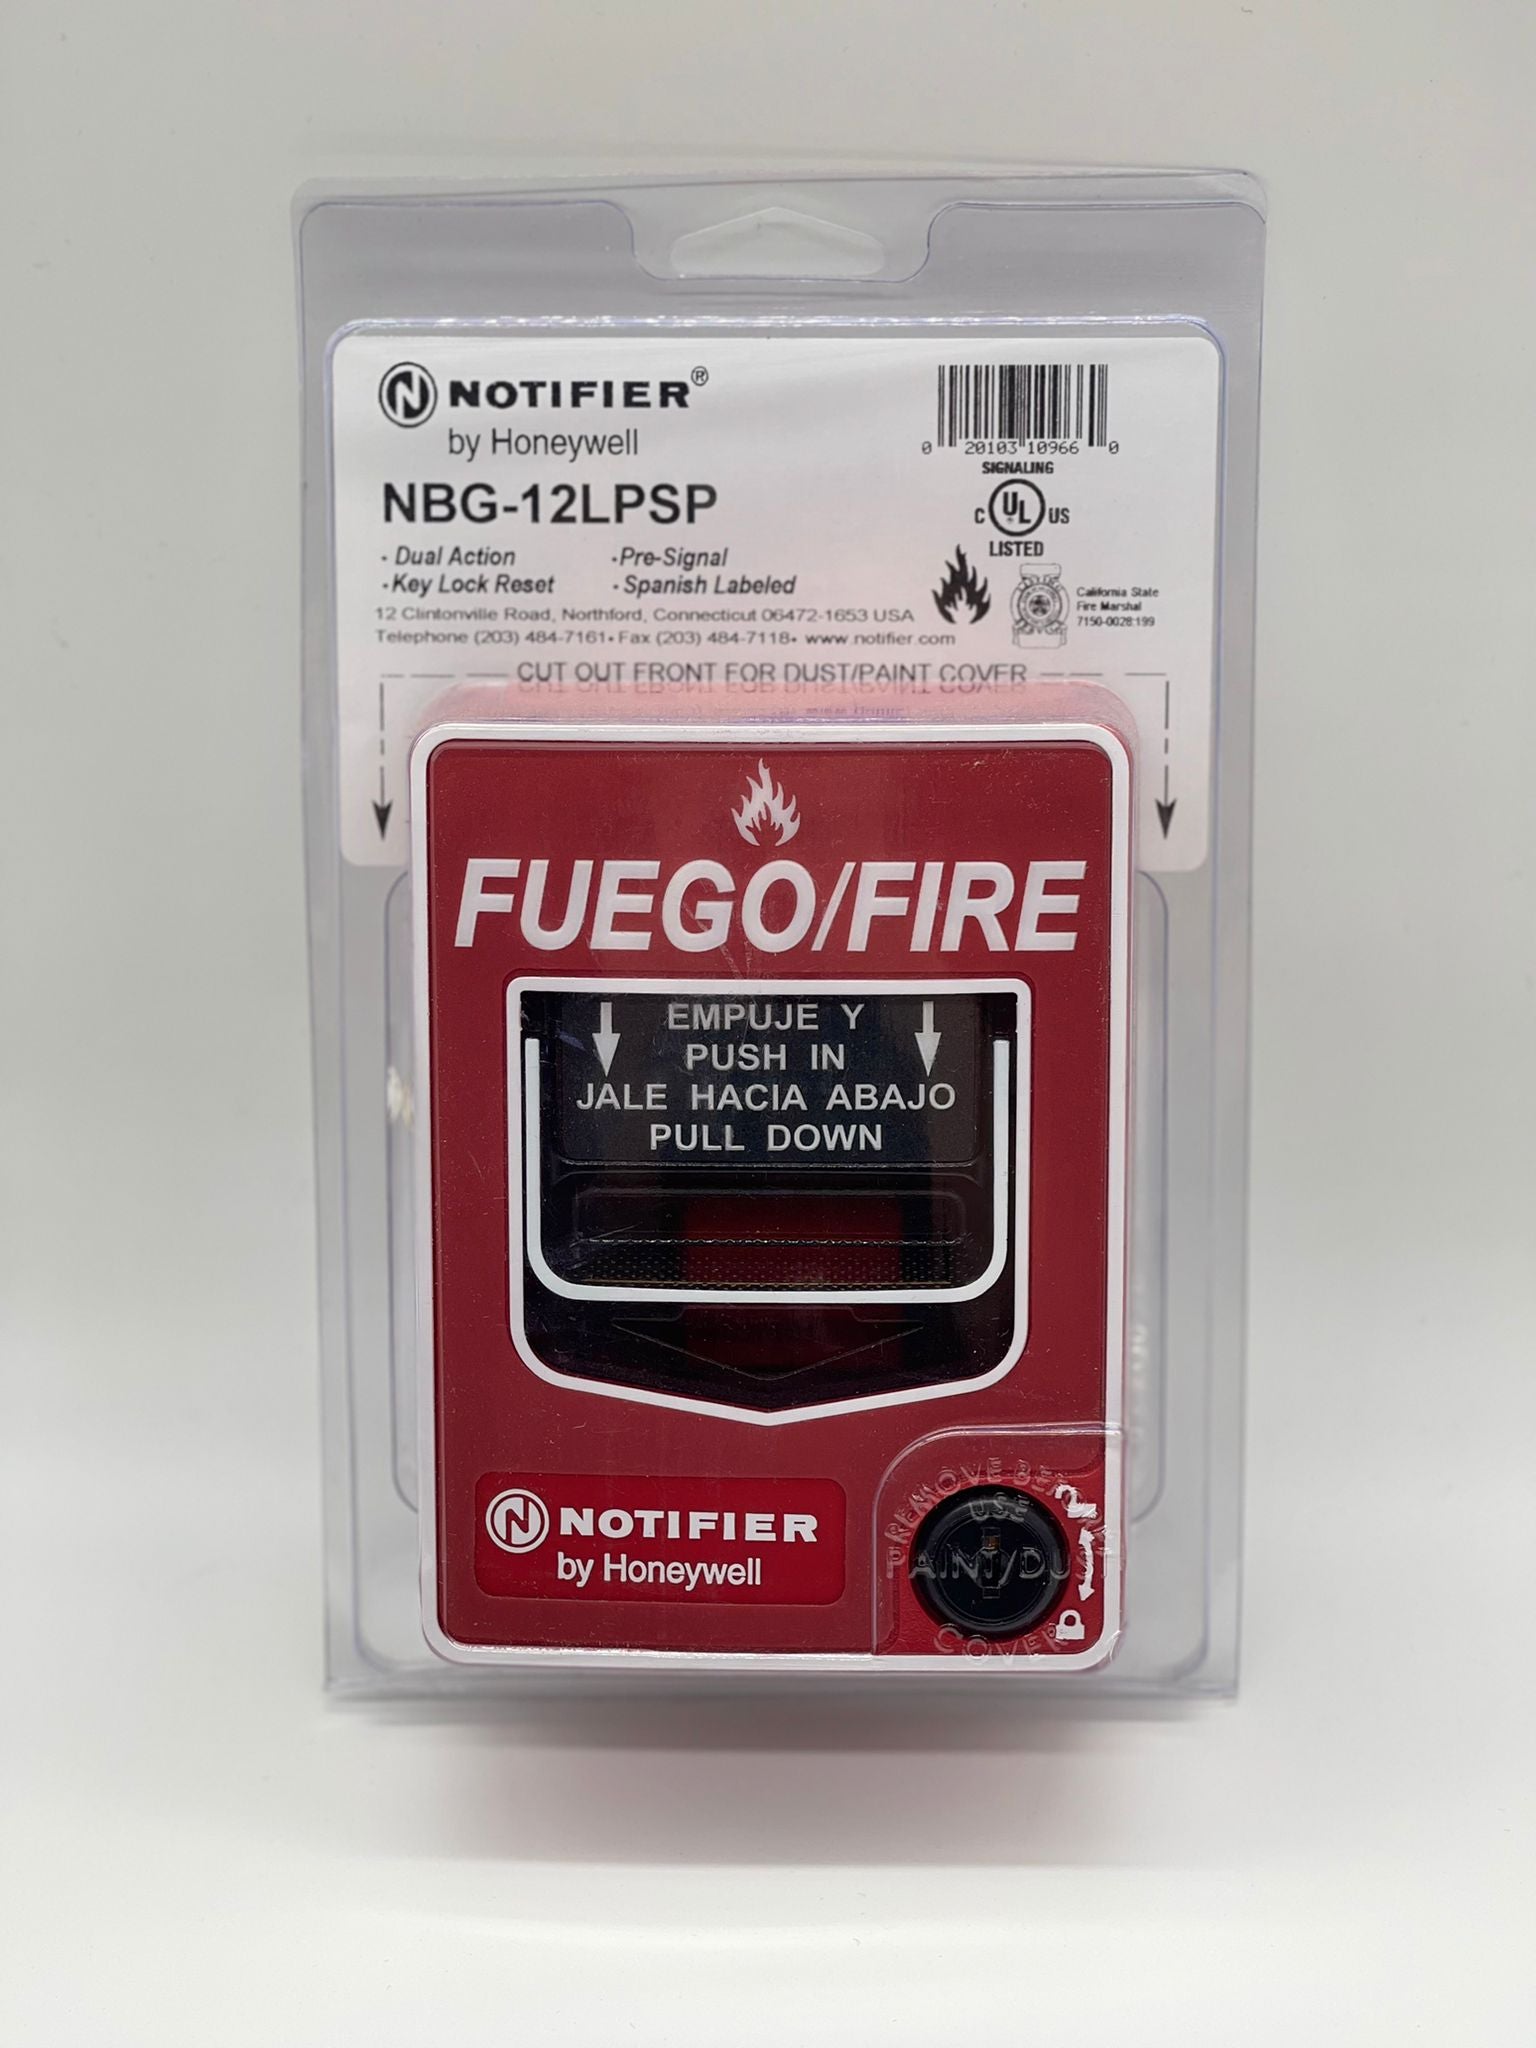 Notifier NBG-12LPSP - The Fire Alarm Supplier